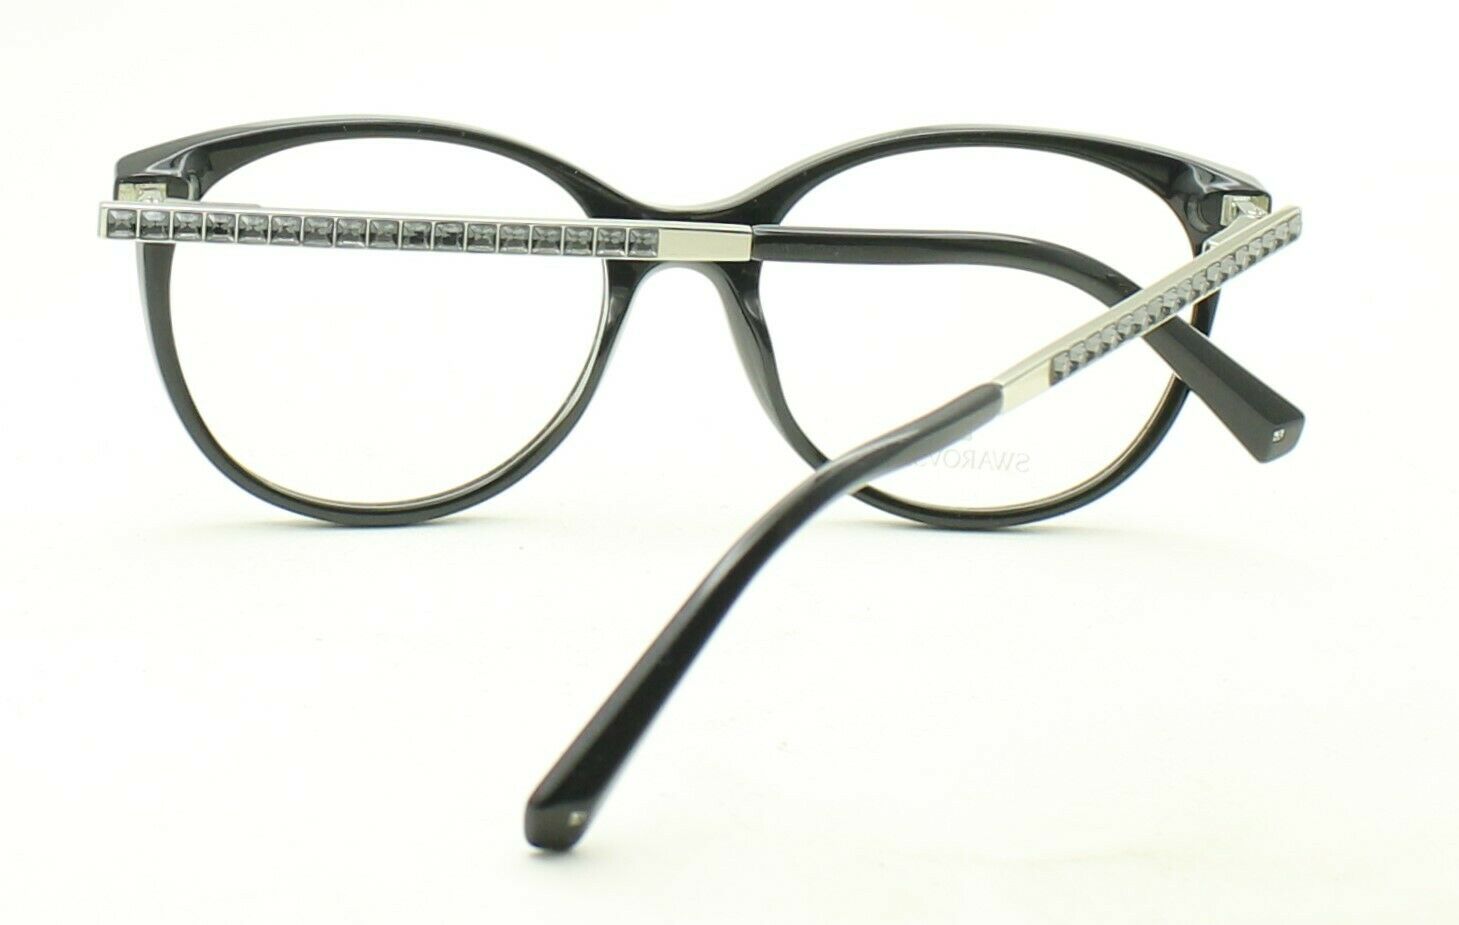 SWAROVSKI SK 5297 001 52mm Eyewear FRAMES RX Optical Glasses Eyeglasses - New